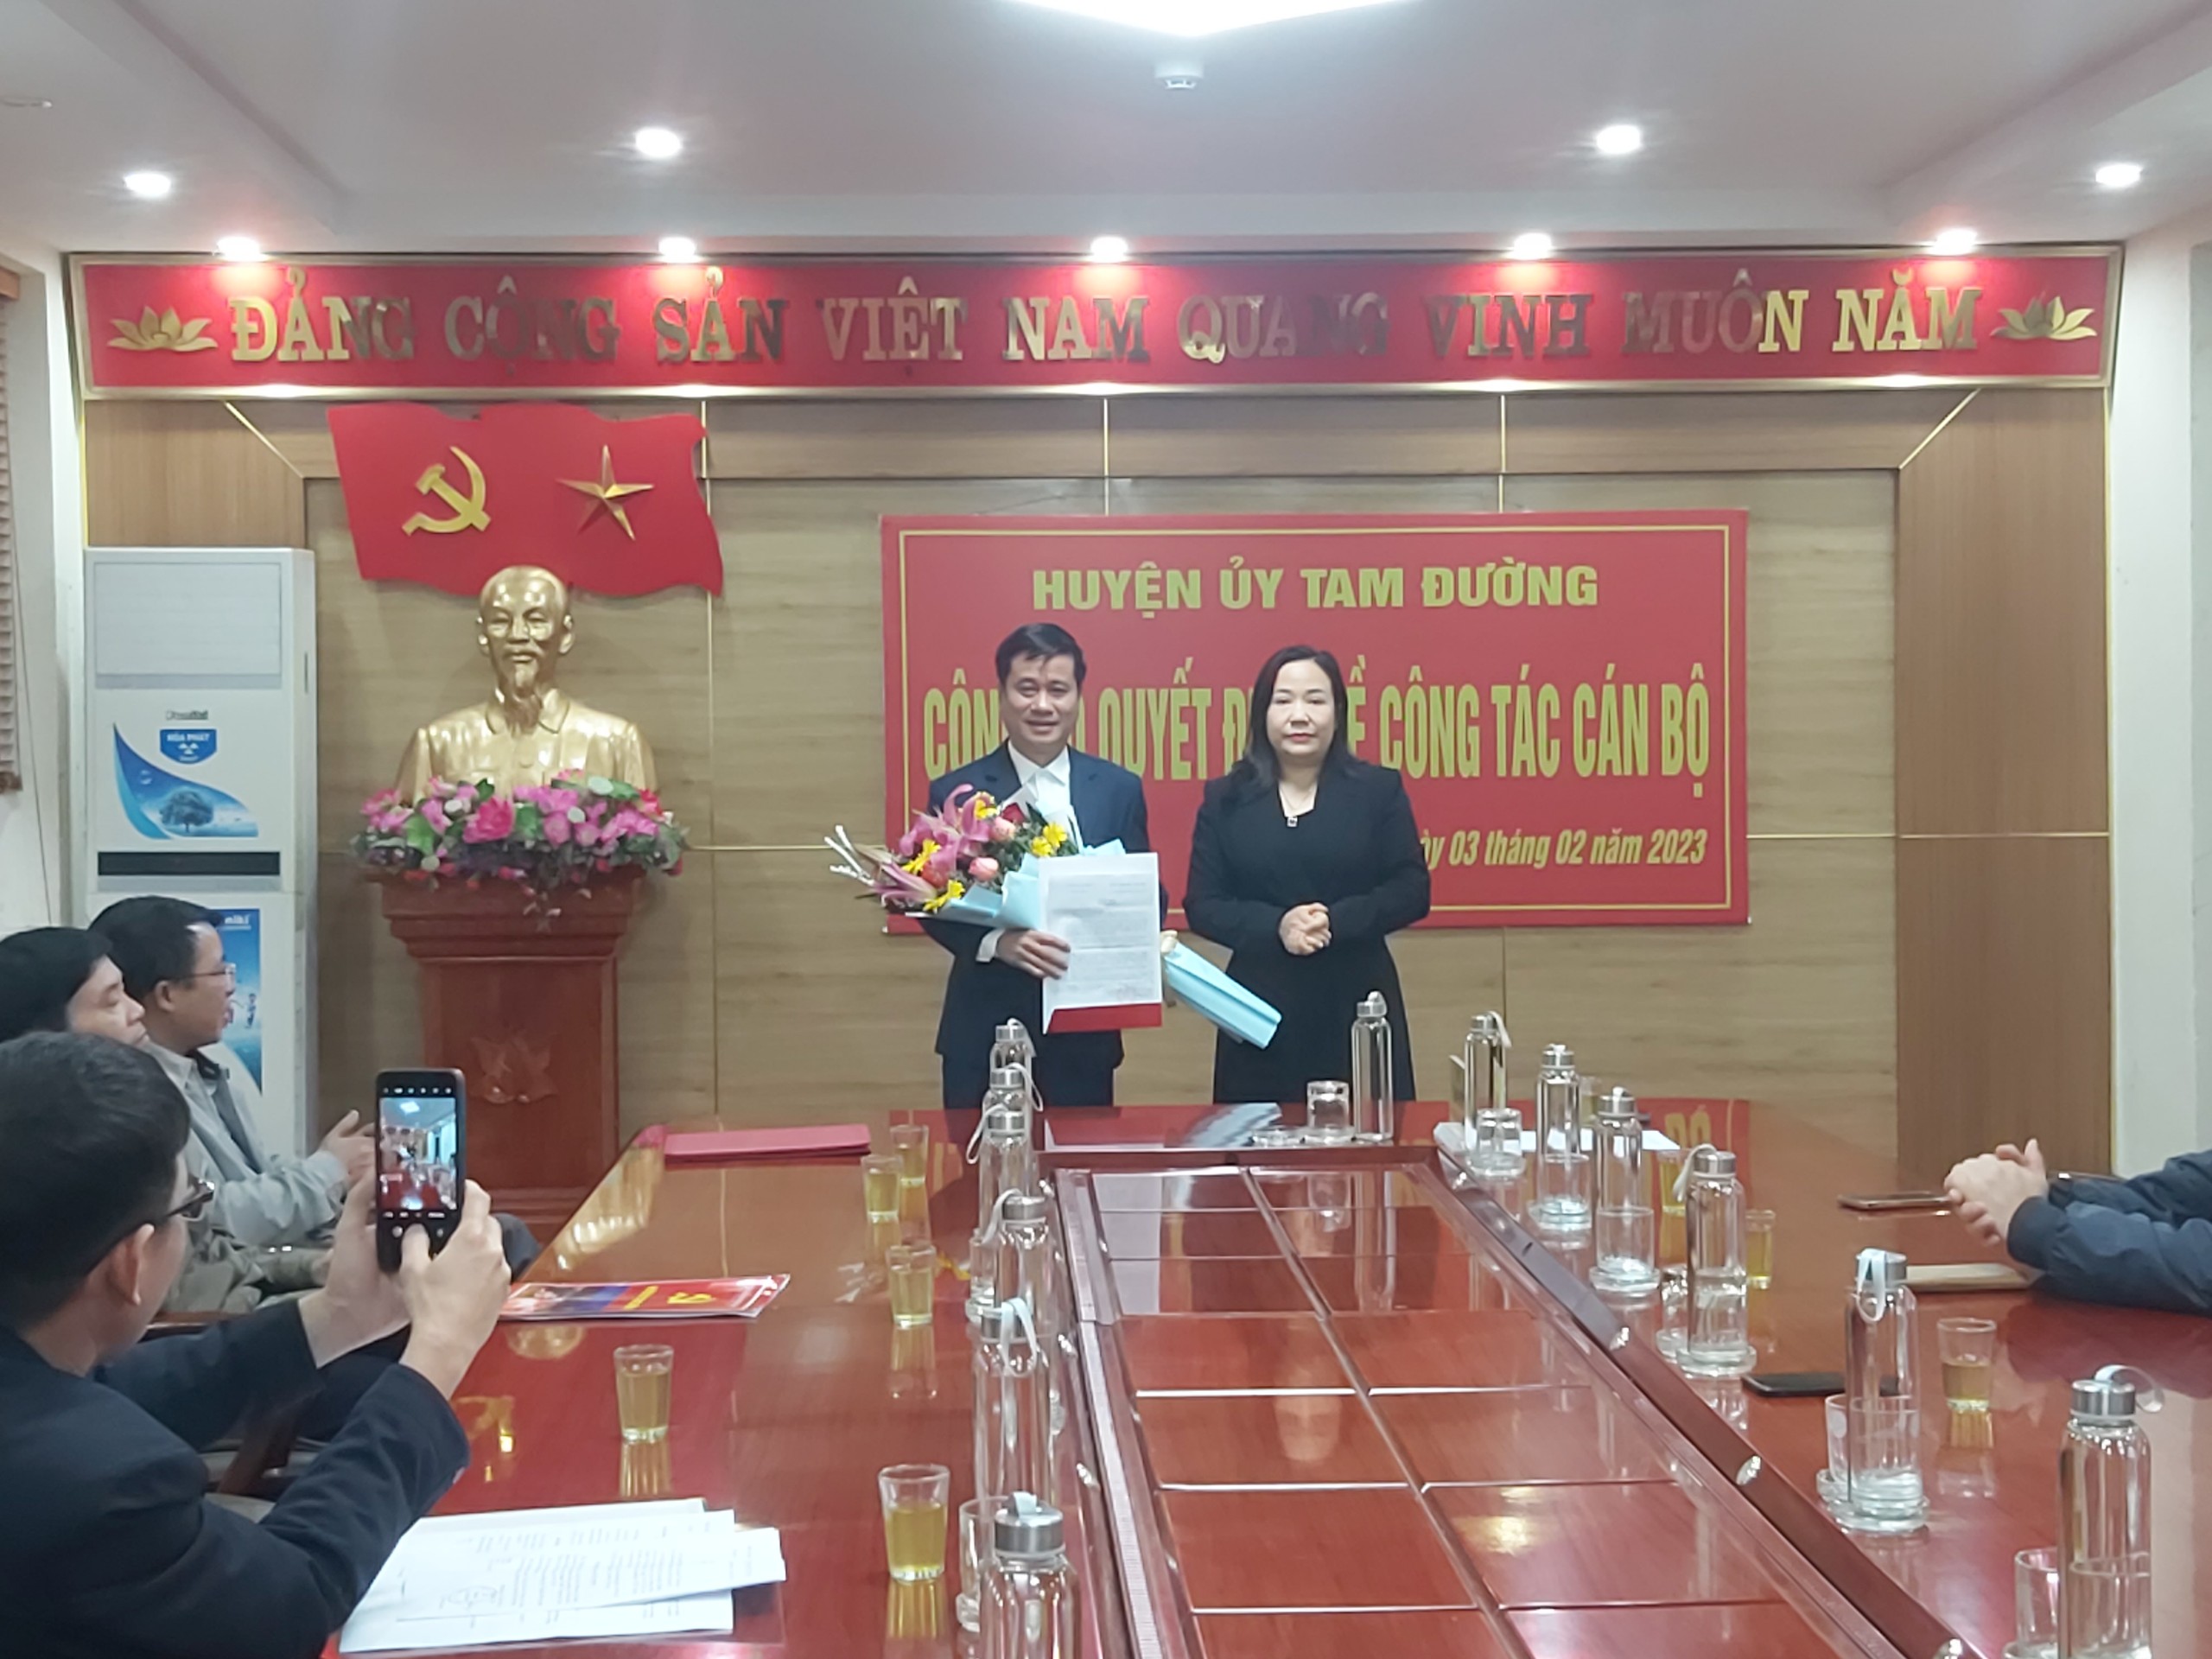 Đồng chí Tẩn Thị Quế, Tỉnh ủy viên, Bí thư Huyện ủy, Chủ tịch HĐND huyện trao các Quyết định của Ban Thường vụ Tỉnh cho đồng chí Nguyễn Hồng Quân